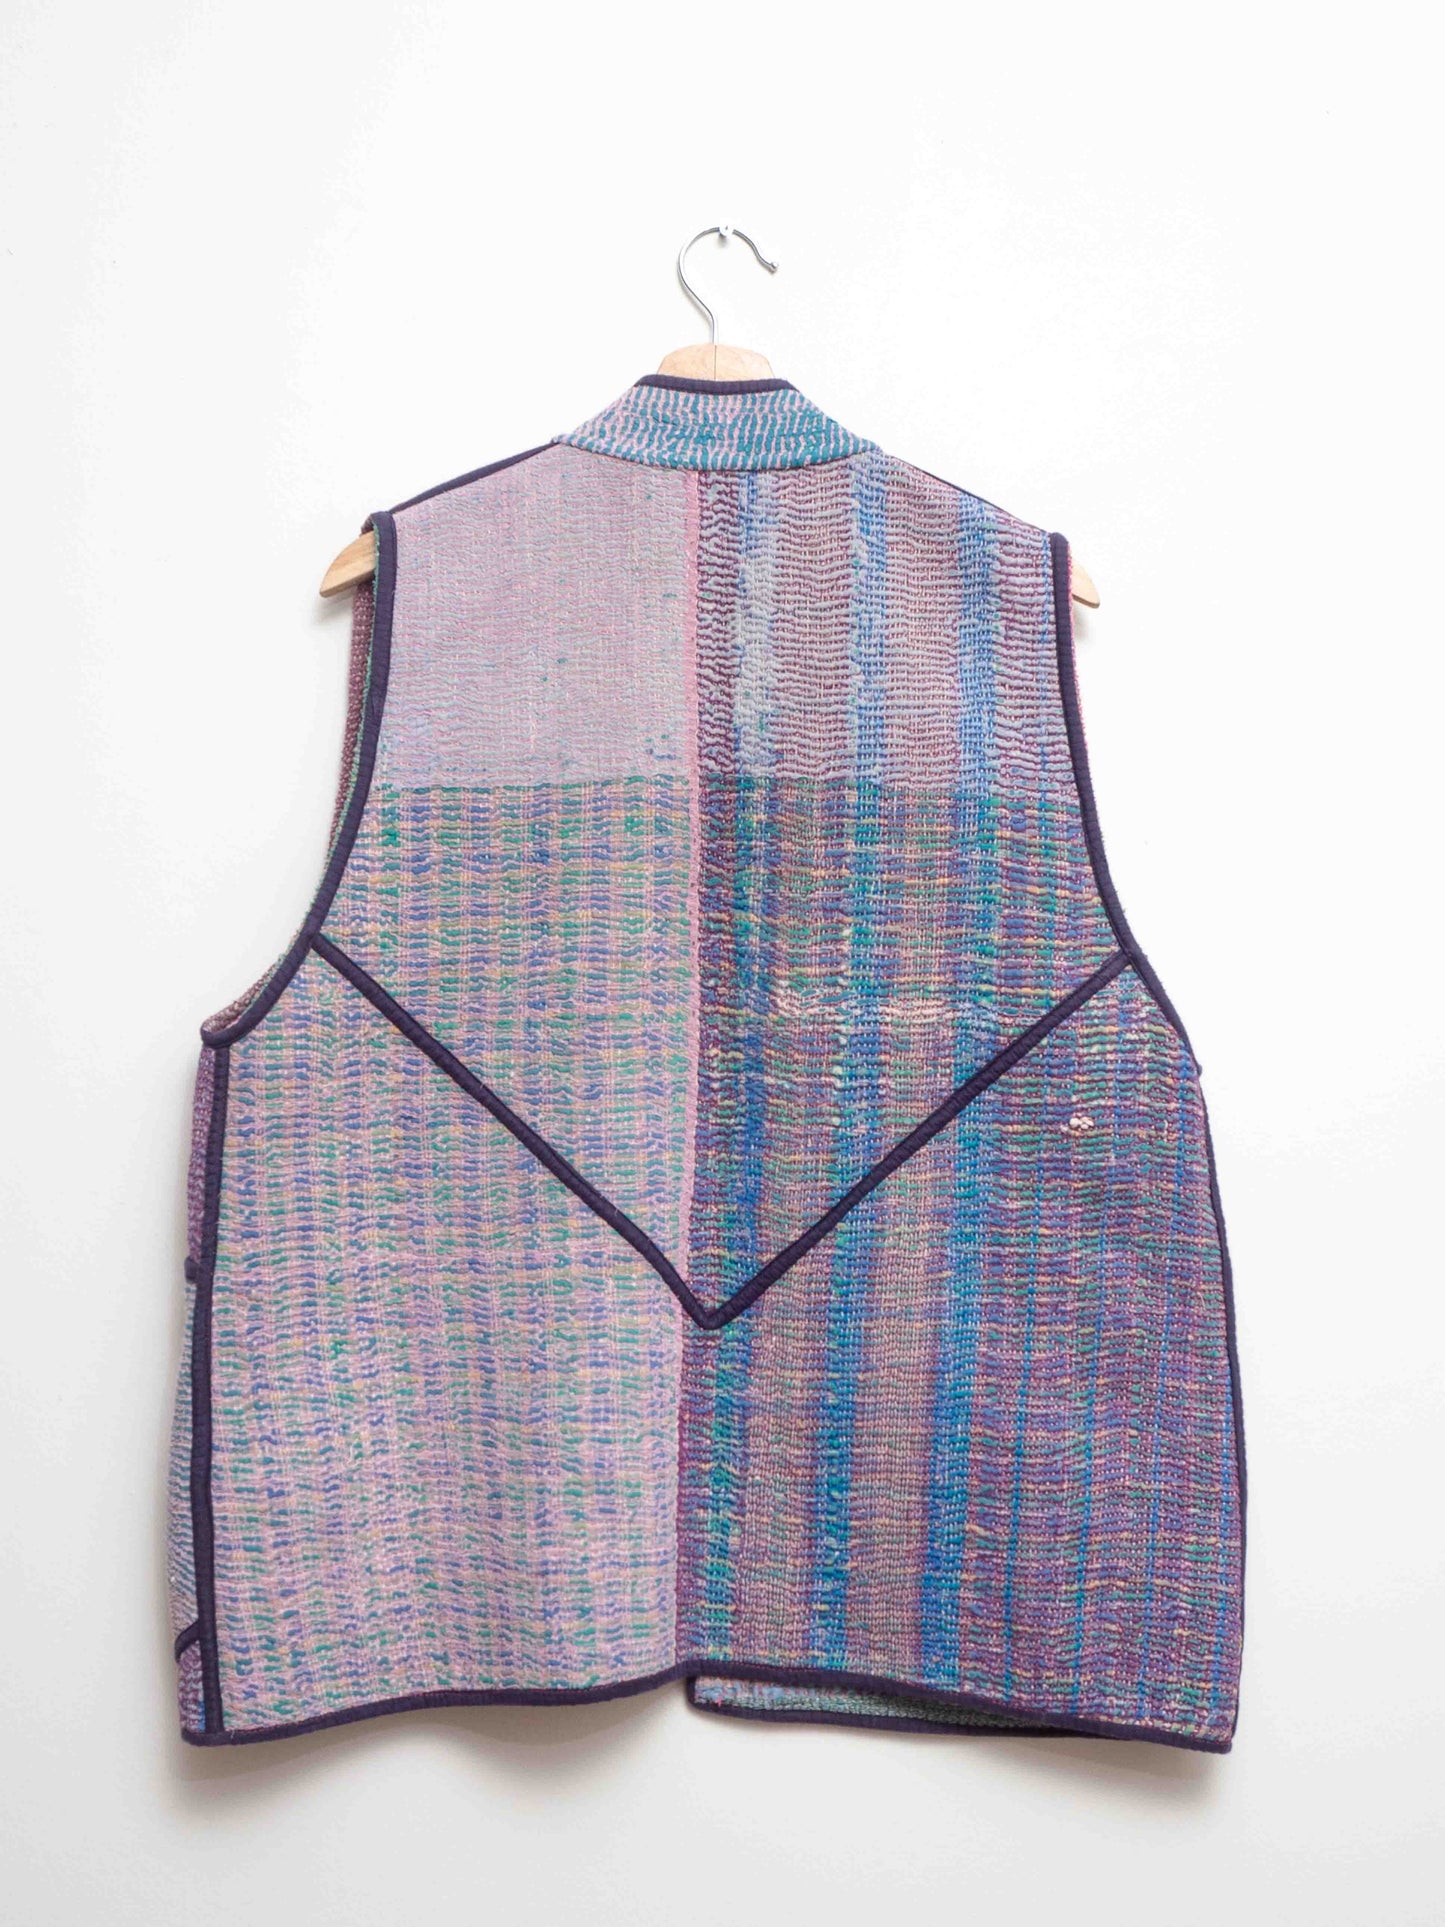 The Ladhiya Vest